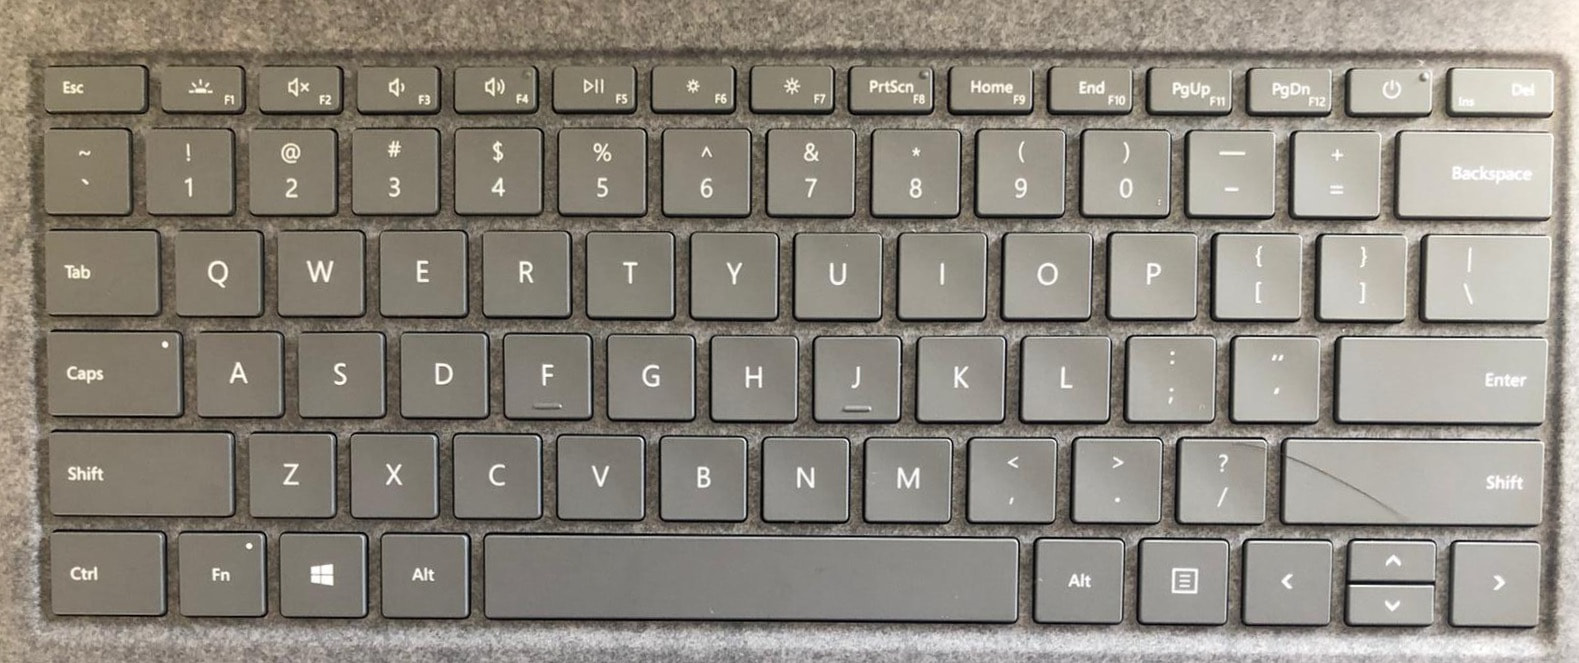 Windows (Surface Laptop 3) keyboard